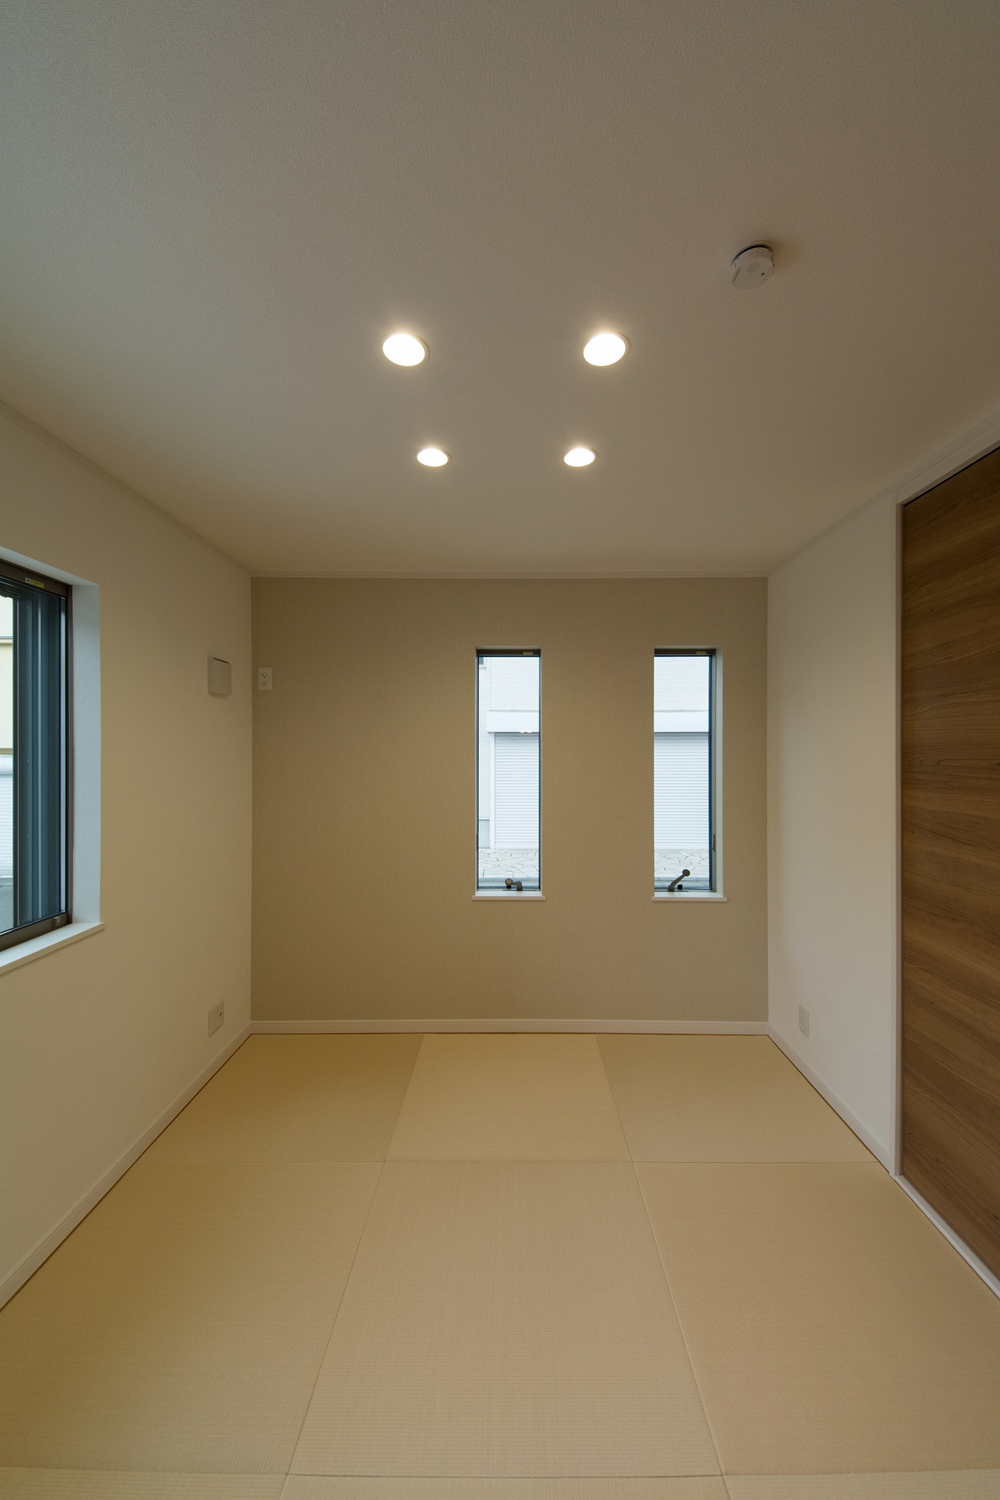 アイボリーのアクセントクロスと縁なし畳の優しい色使い。モダンな空間の1F畳敷き洋室。